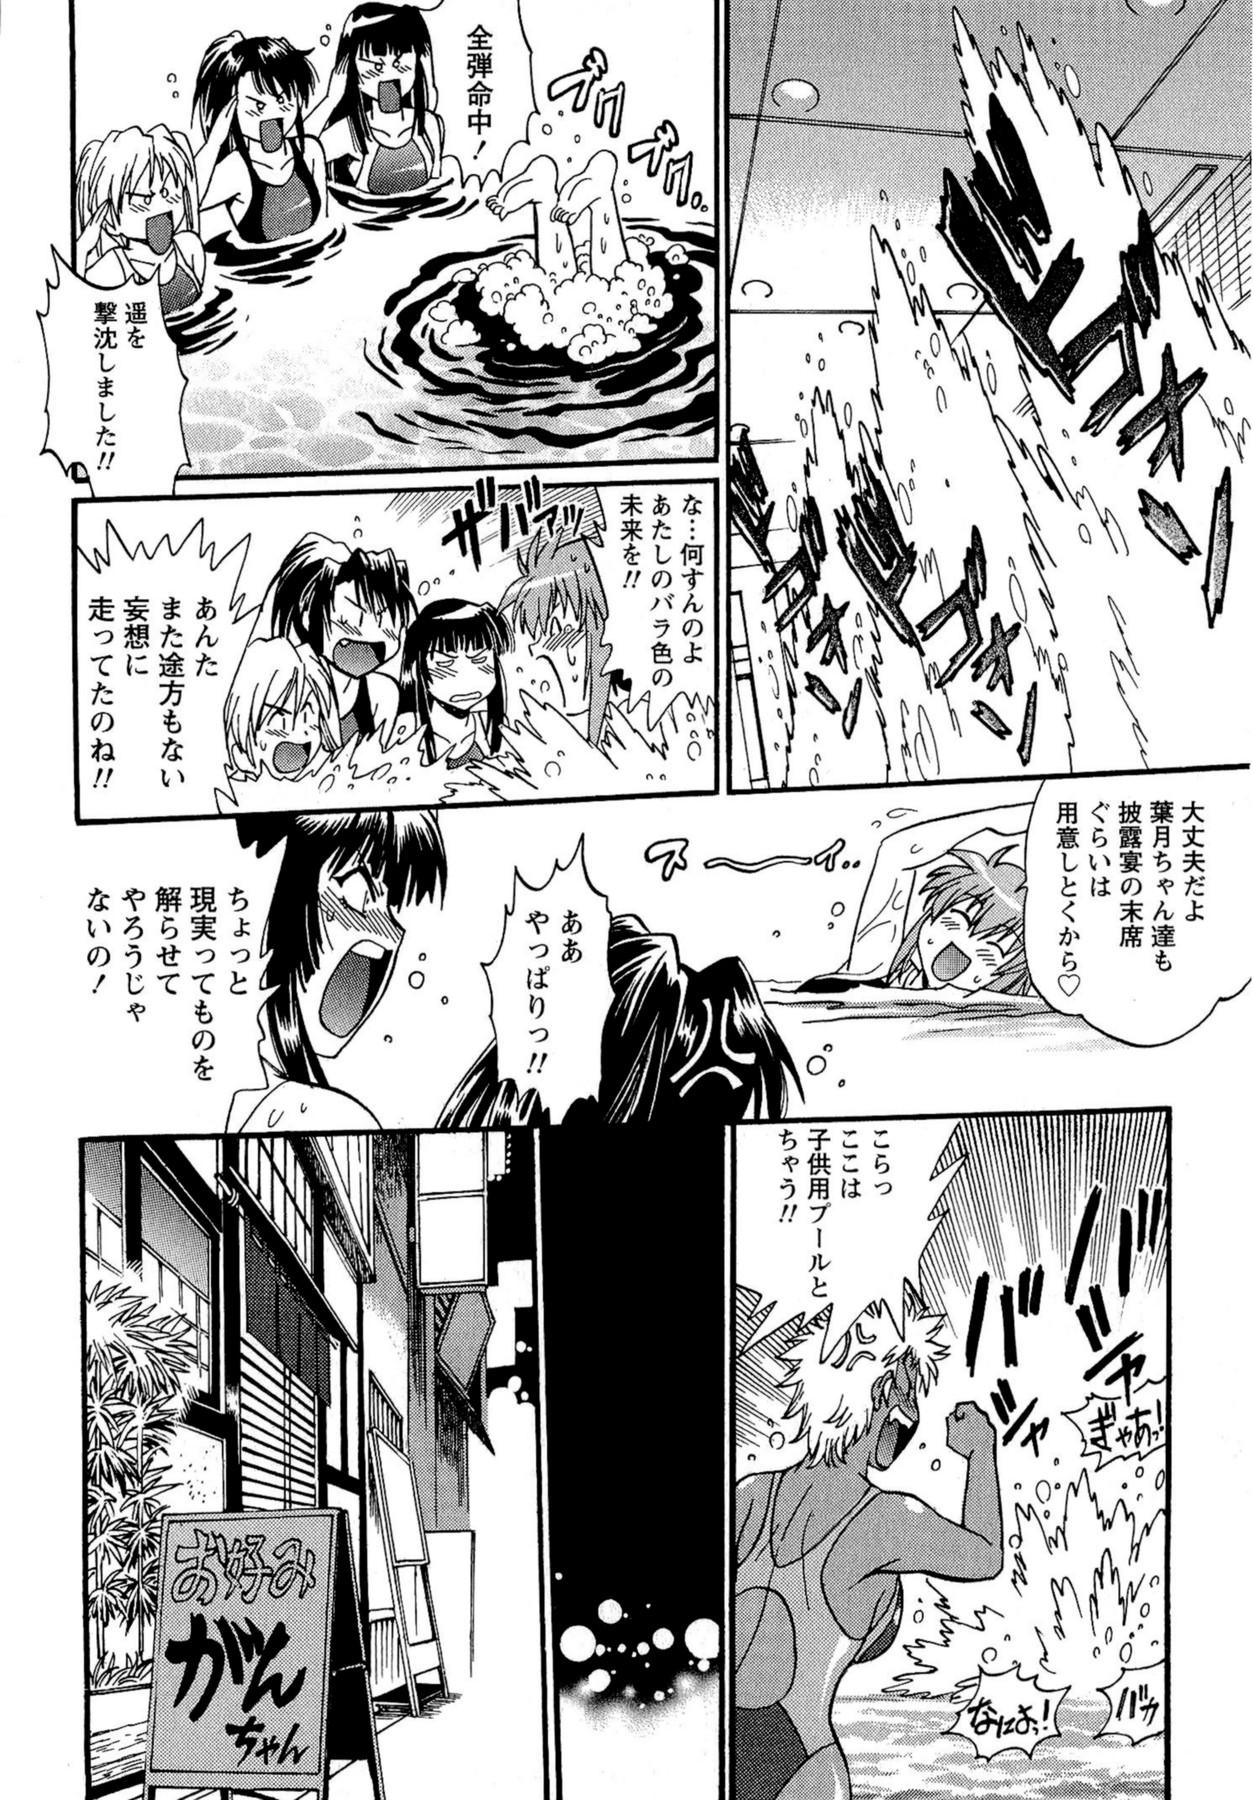 Kuikomi wo Naoshiteru Hima wa Nai! Vol. 2 53